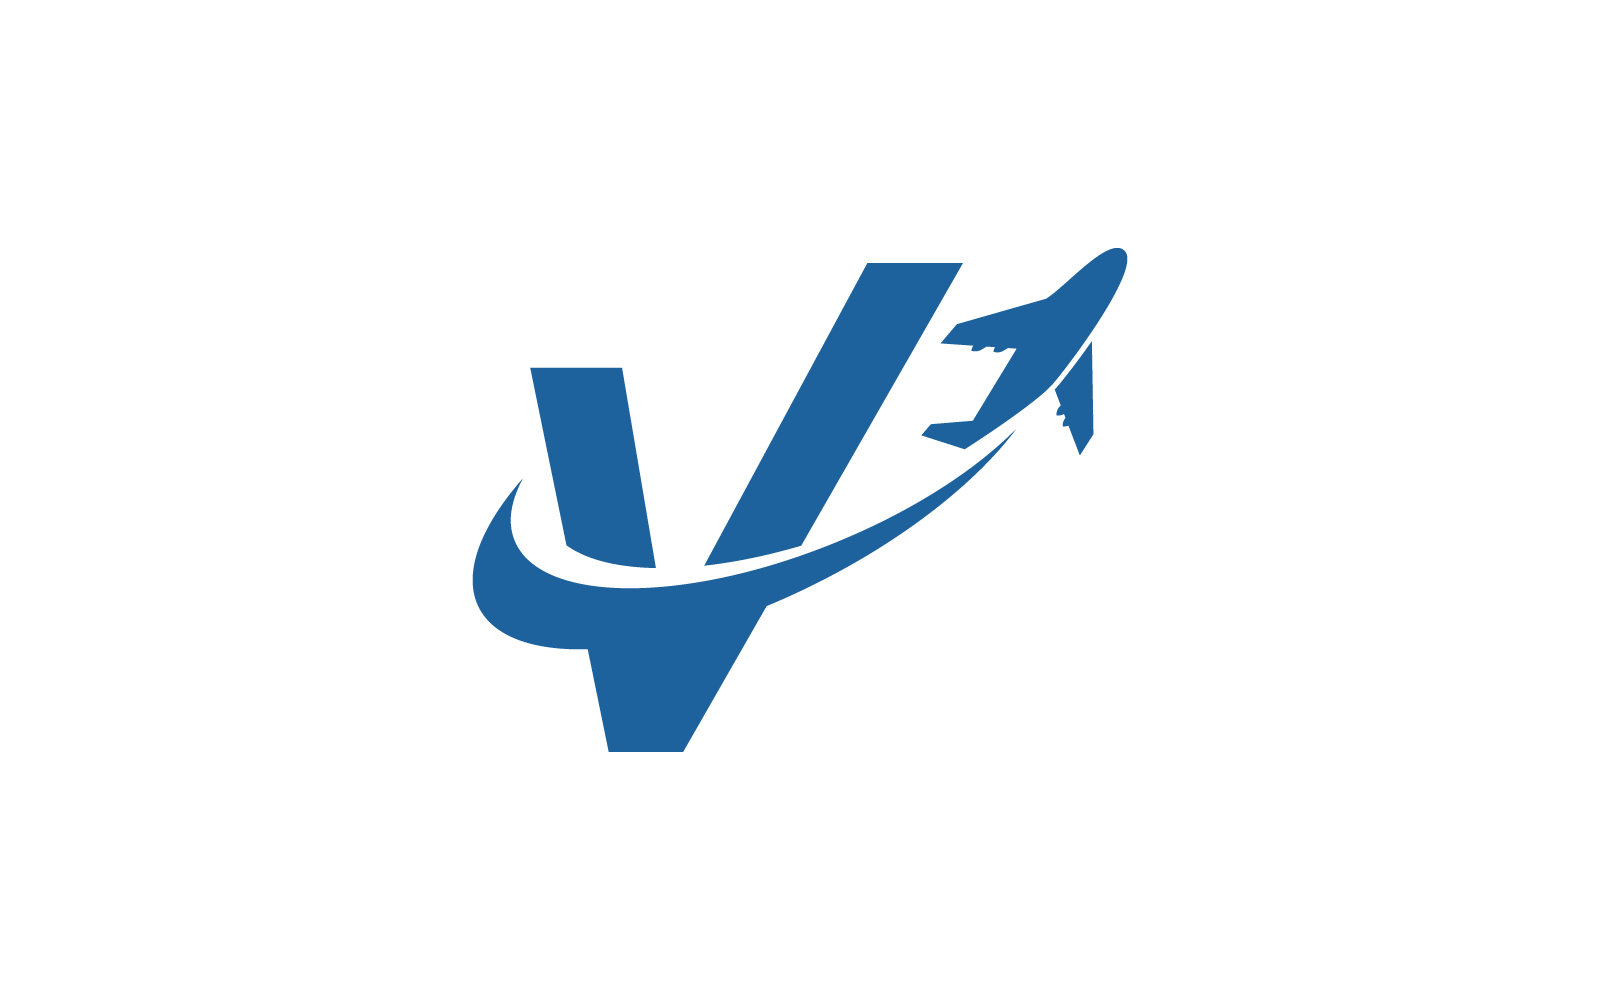 Vliegtuig met V eerste logo vector sjabloon